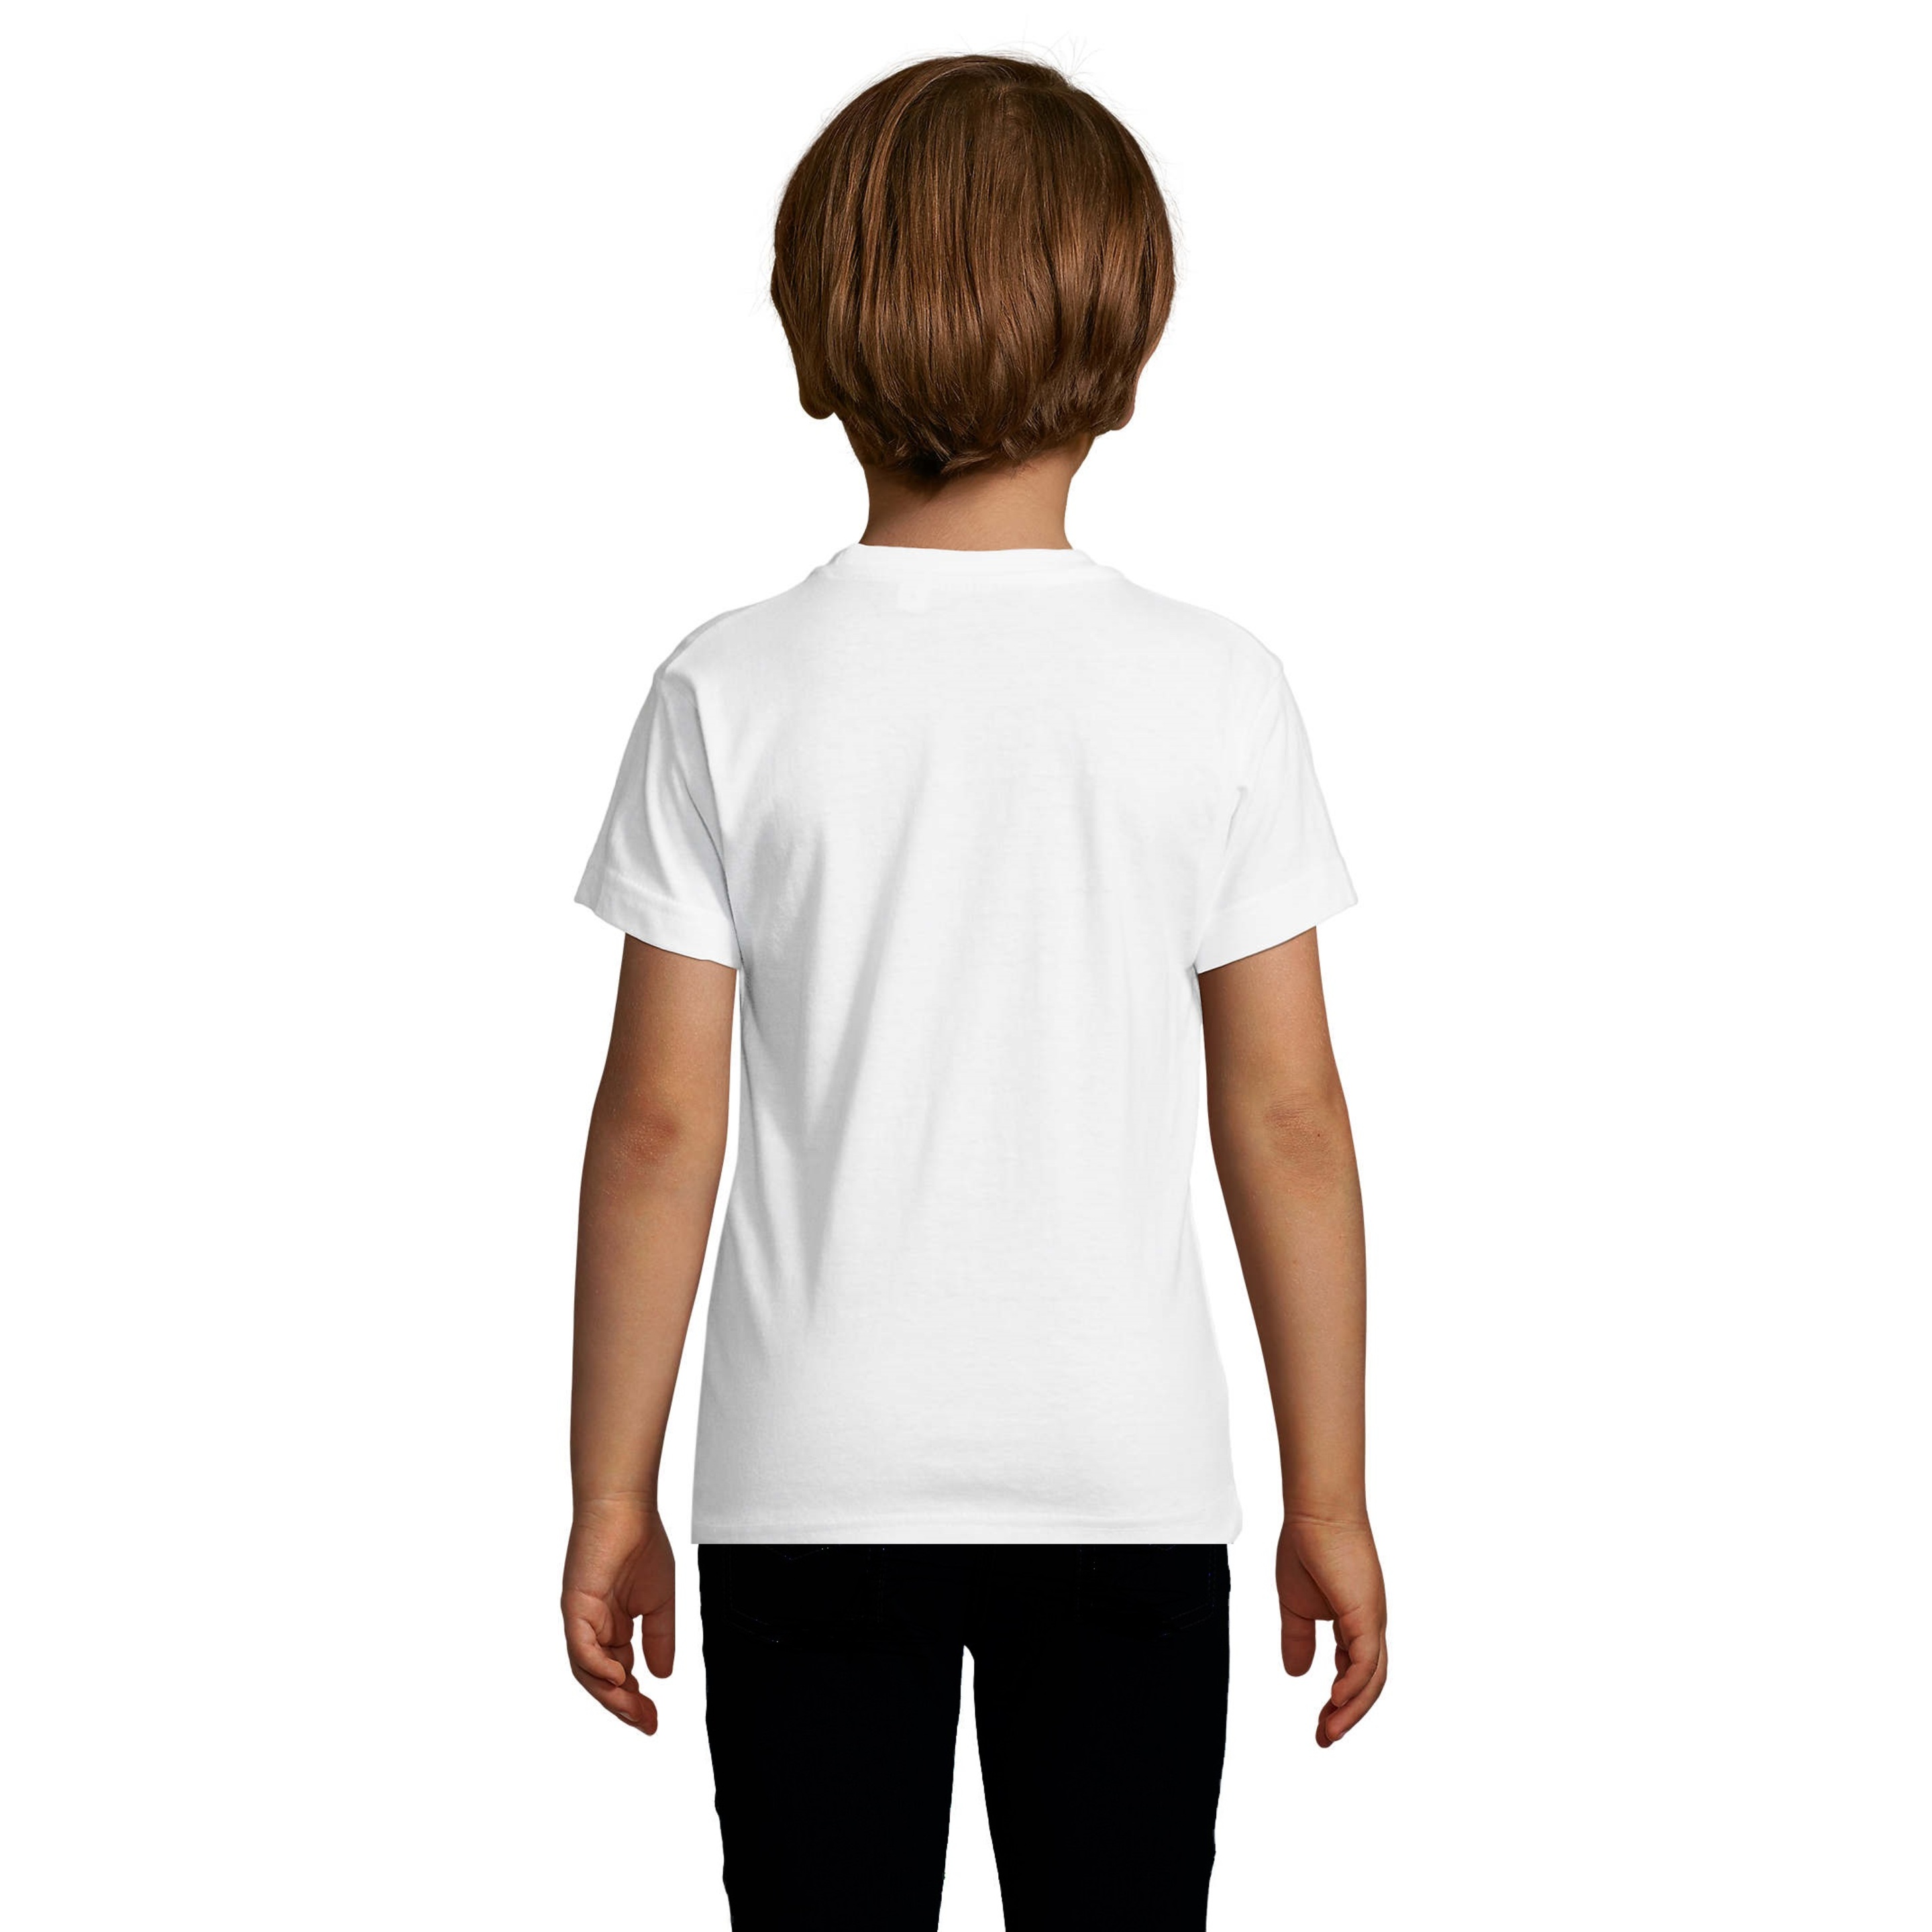 Lote 2 Camiseta Regent Fit Kids Entallada Cuello Redondo Regent